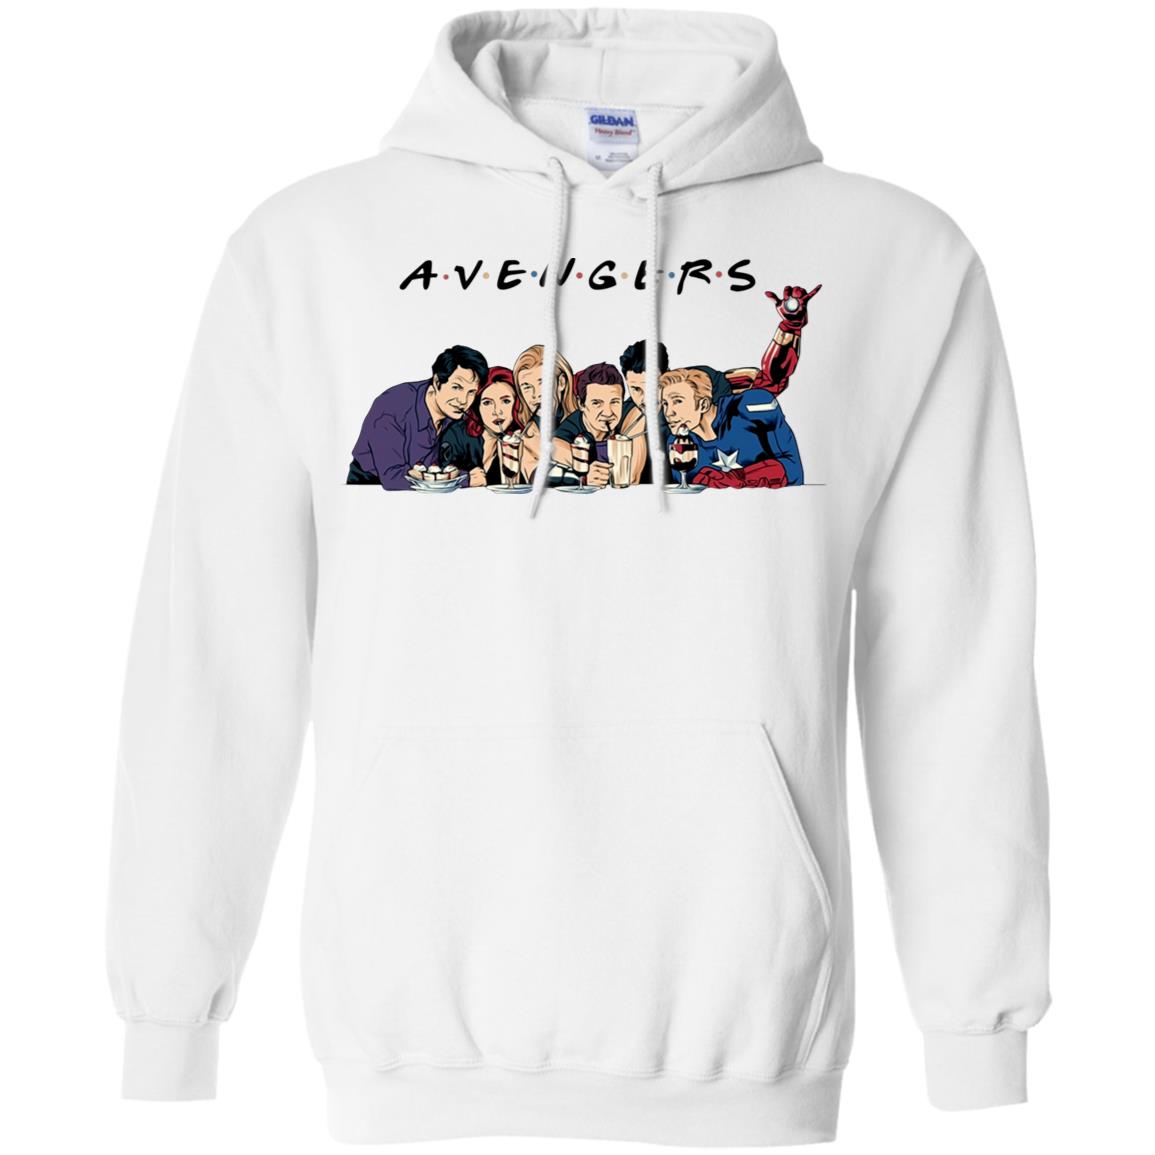 avengers friends sweatshirt